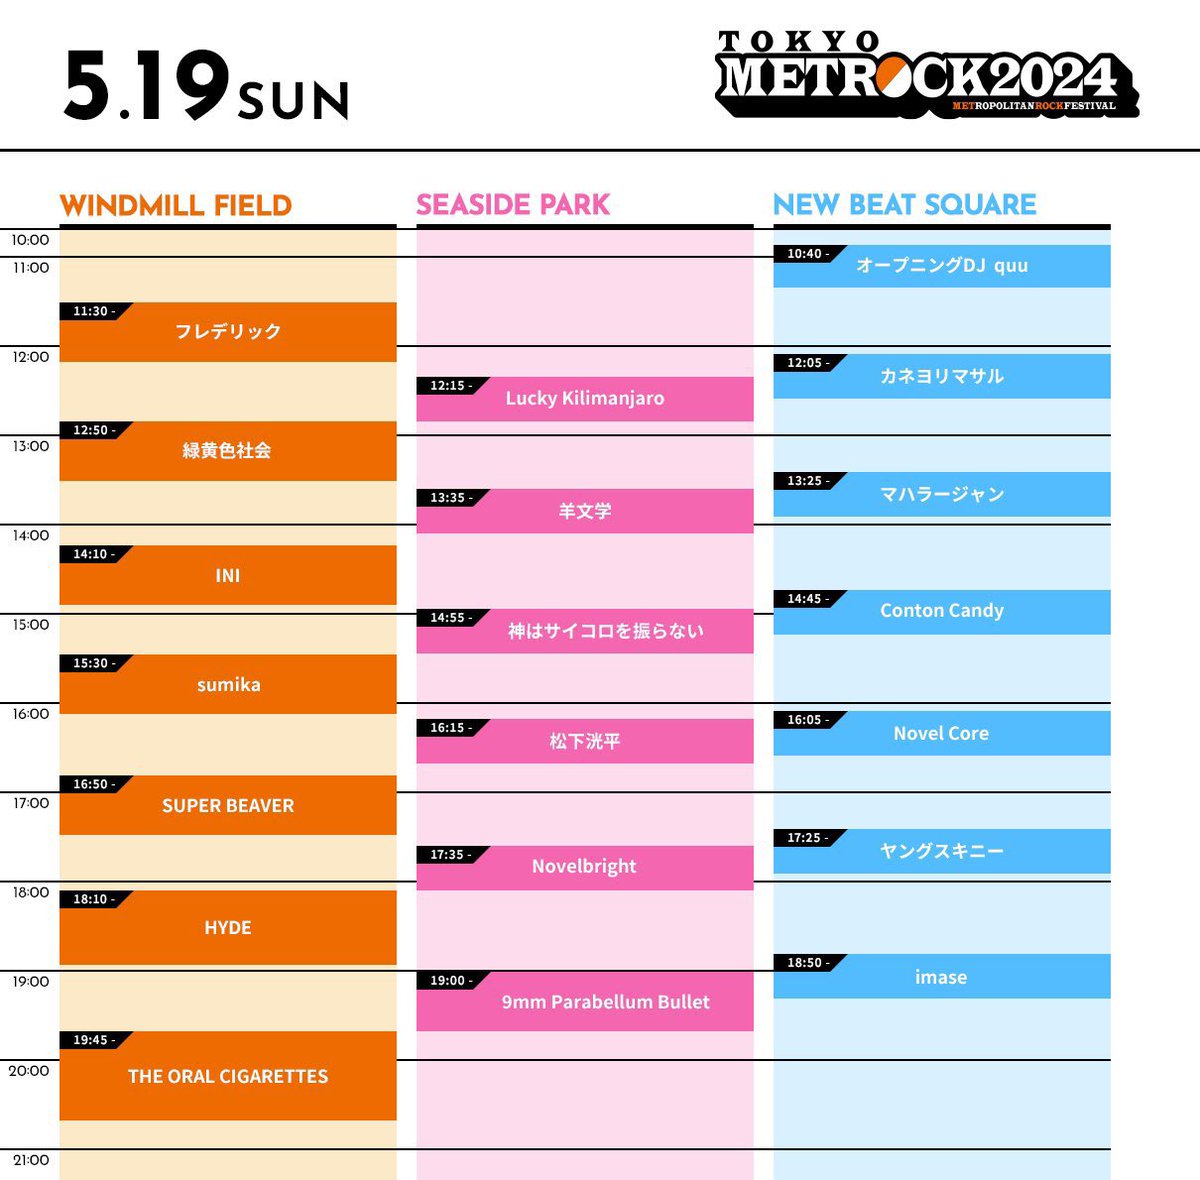 【まもなく開催】

TOKYO METROPOLITAN ROCK FESTIVAL 2024

2024年5月18,19日
新木場・若洲公園

我々 #sumika は、
---
5月19日(日)
15時30分〜
WINDMILL STAGE
---
に出演◎

グッズ販売
9:30〜19:00予定

詳細⬇︎
metrock.jp/index.html

#メトロック